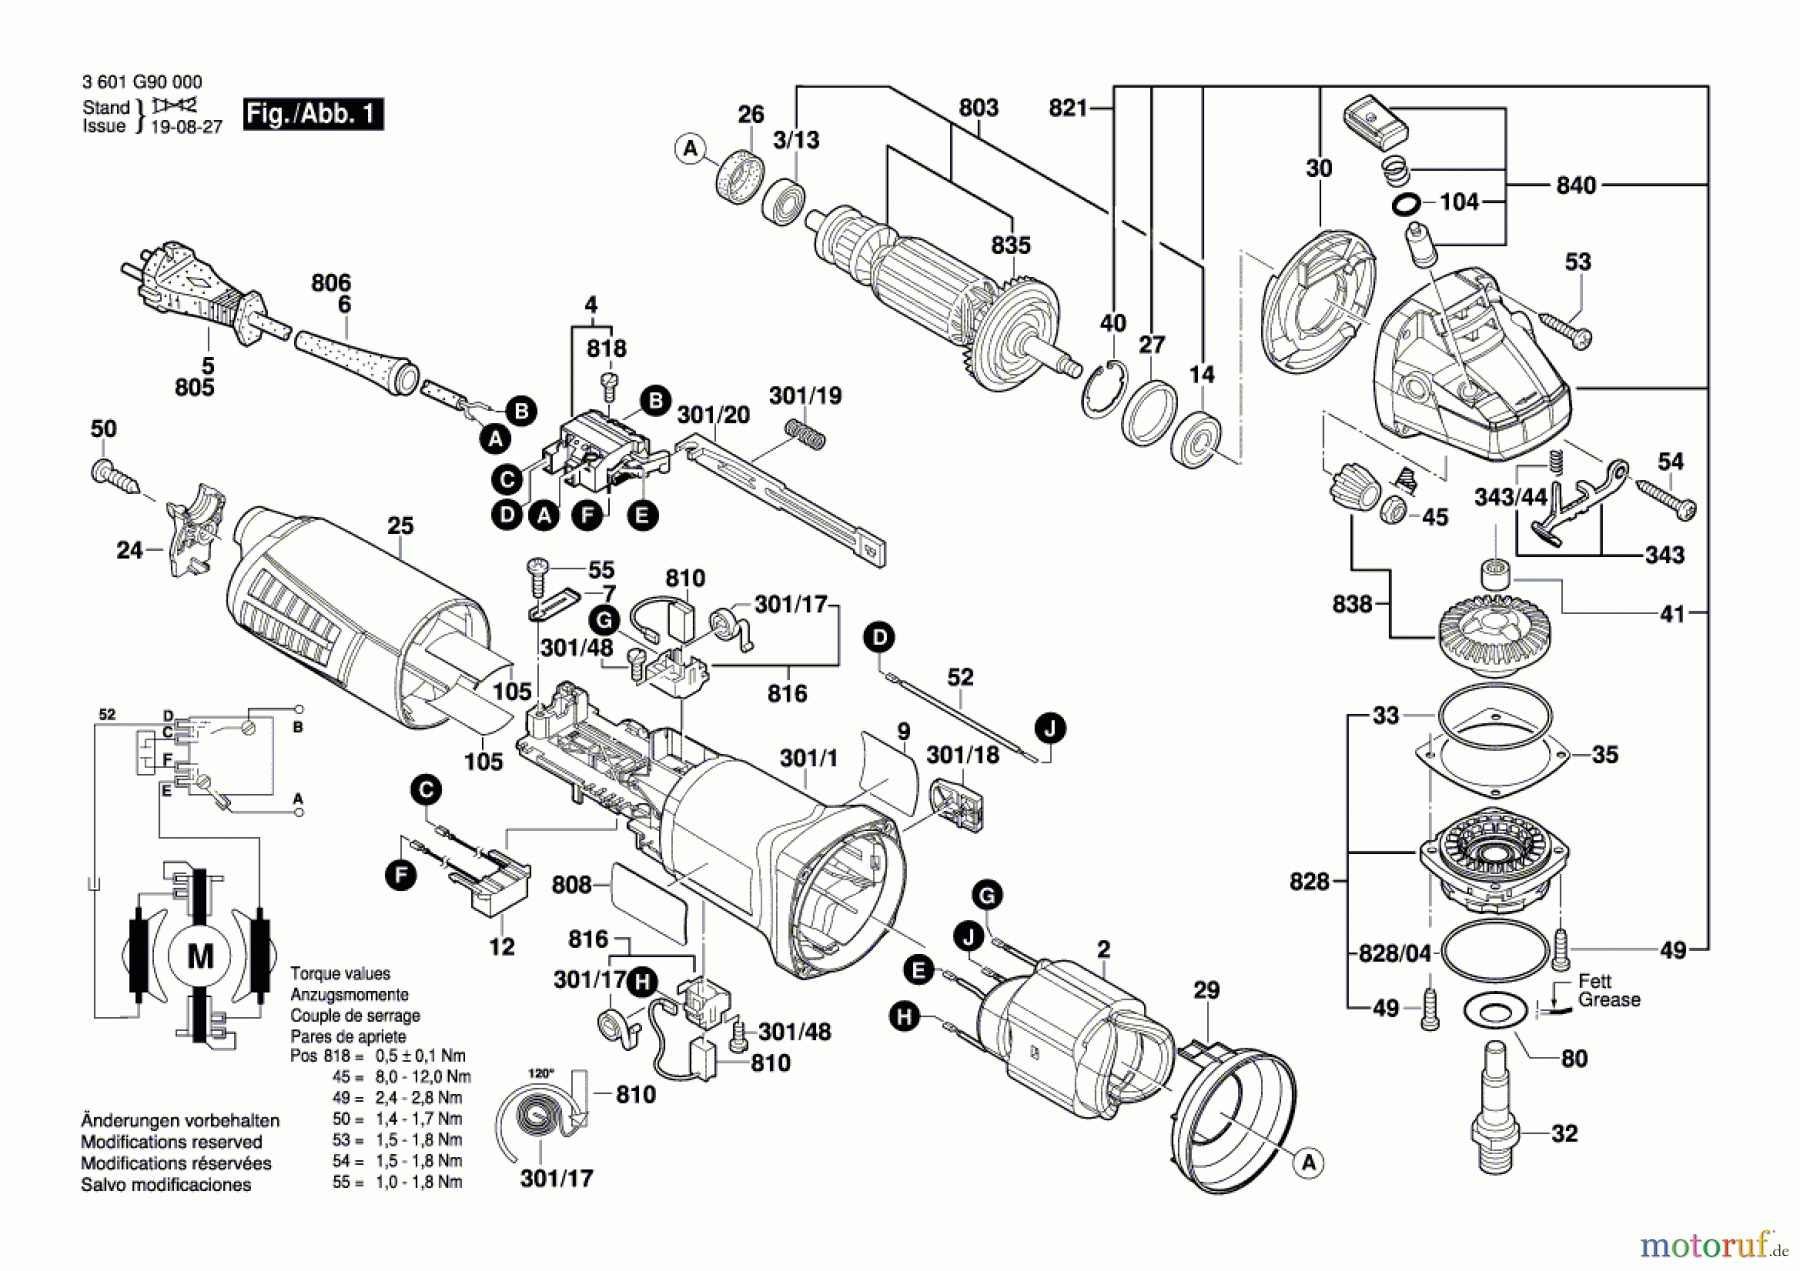  Bosch Werkzeug Winkelschleifer GWS 11-125 Seite 1